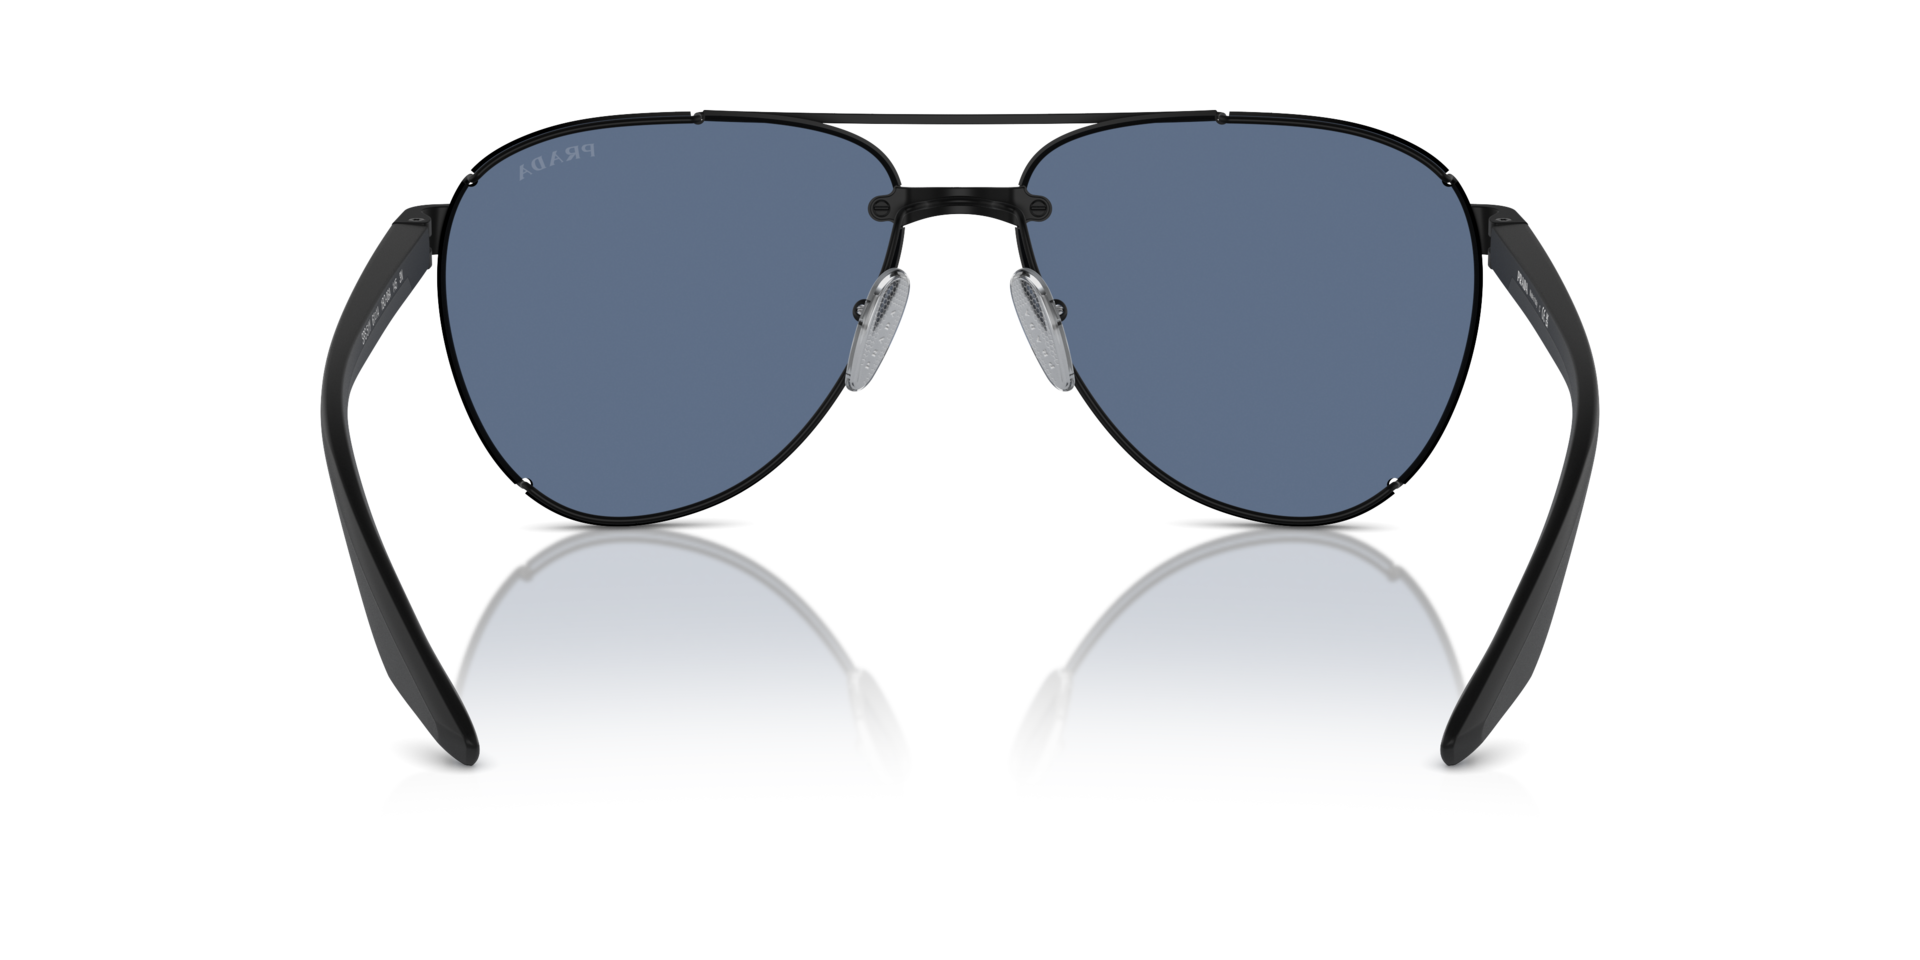 Das Bild zeigt die Sonnenbrille PS51YS 1BO06A von der Marke Prada Linea Rossa in schwarz.